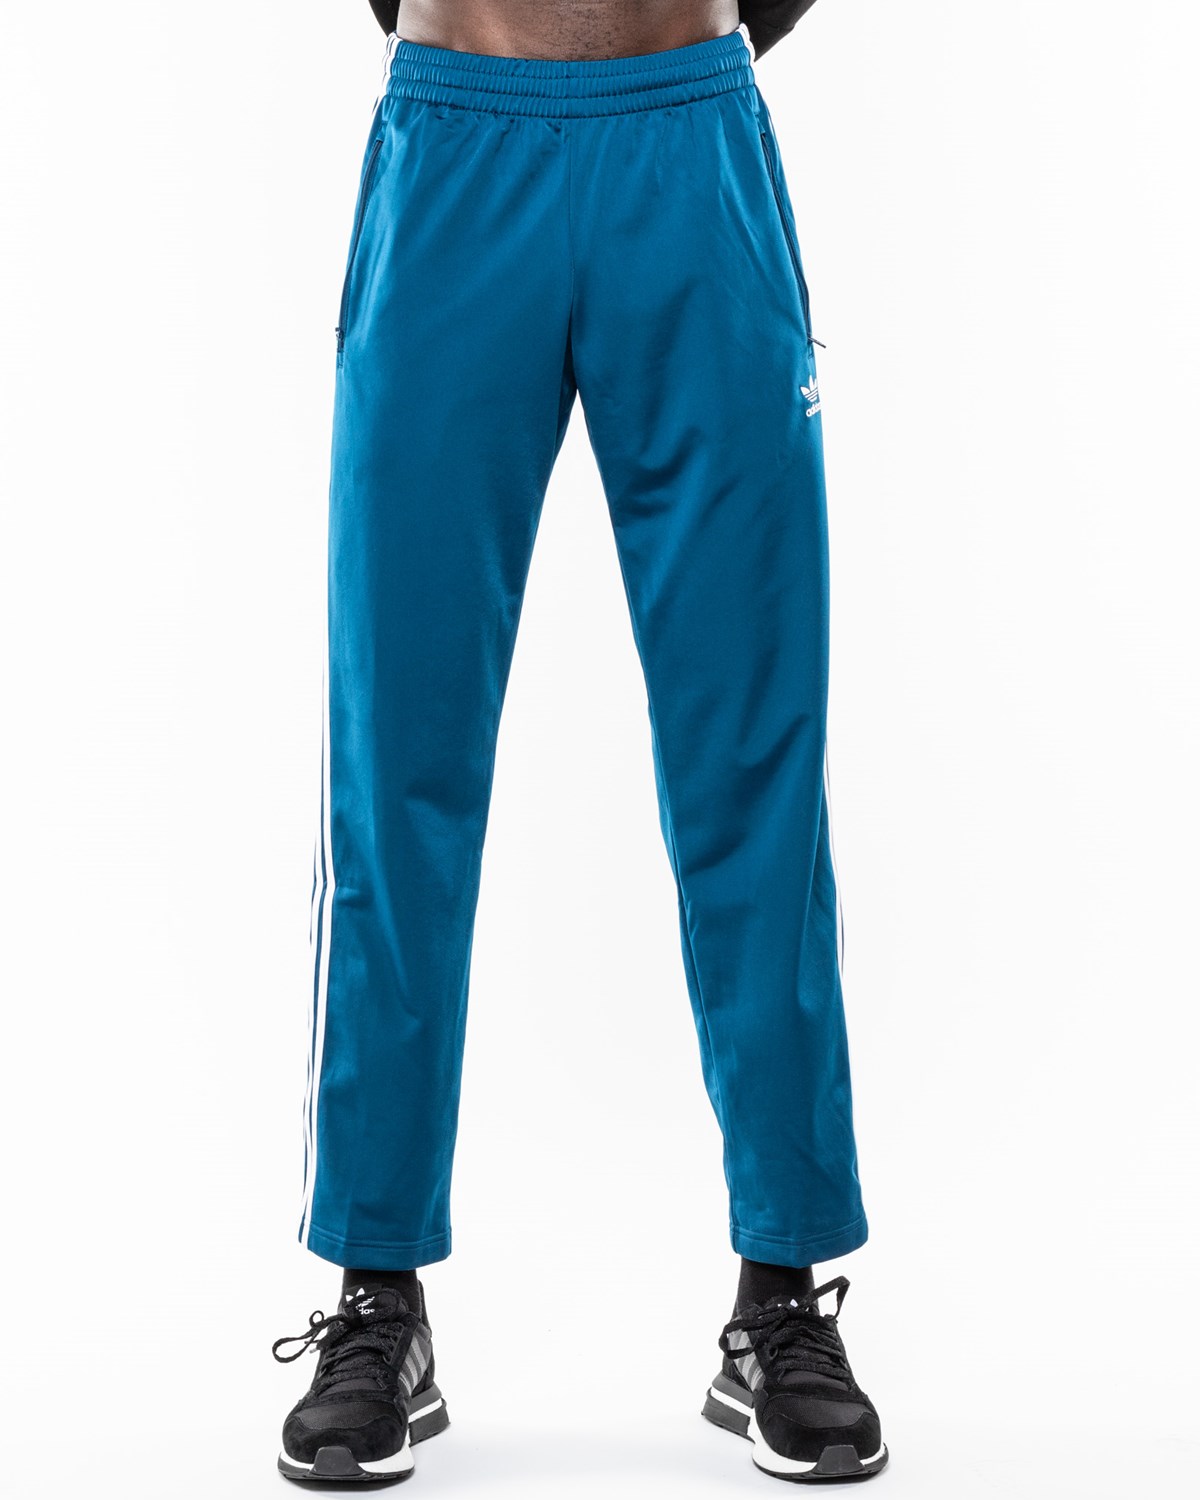 Firebird TP adidas Bottoms Track Pants Blue